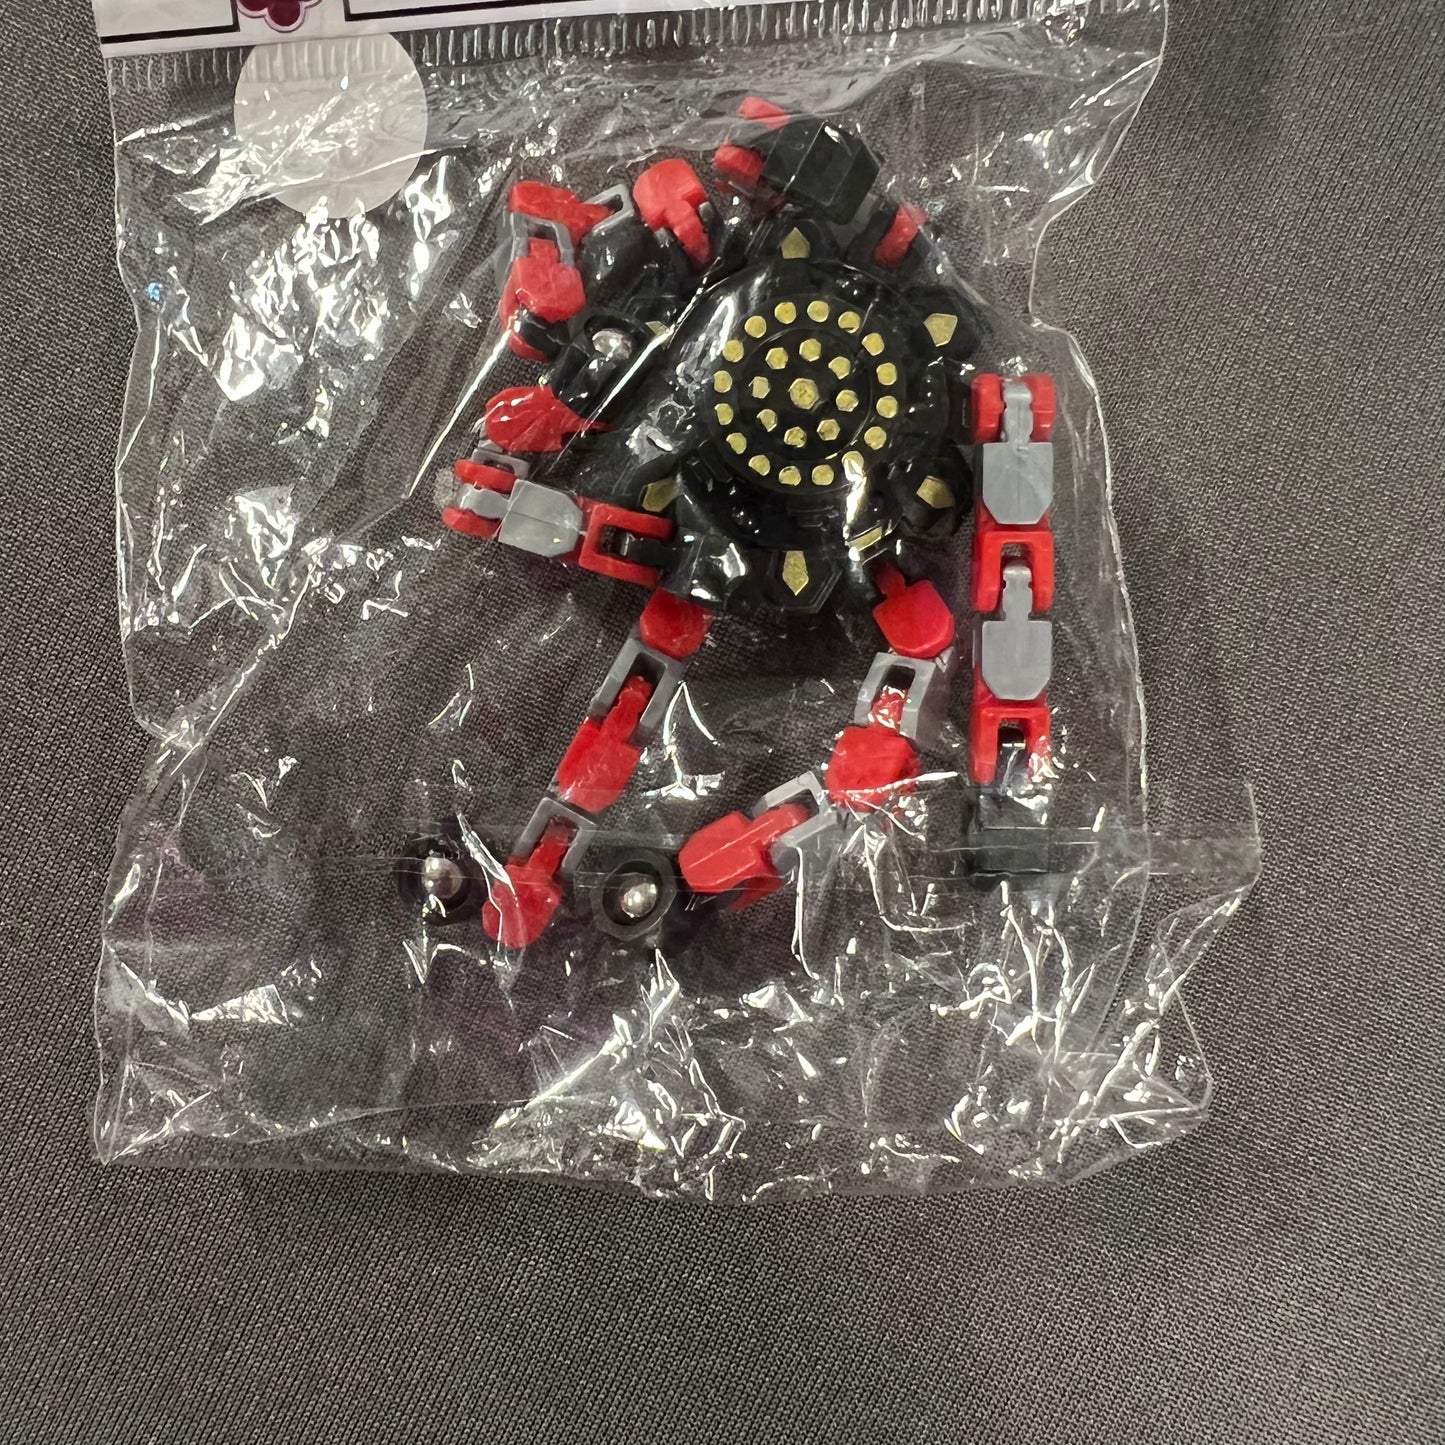 Spider Fidget Spinners